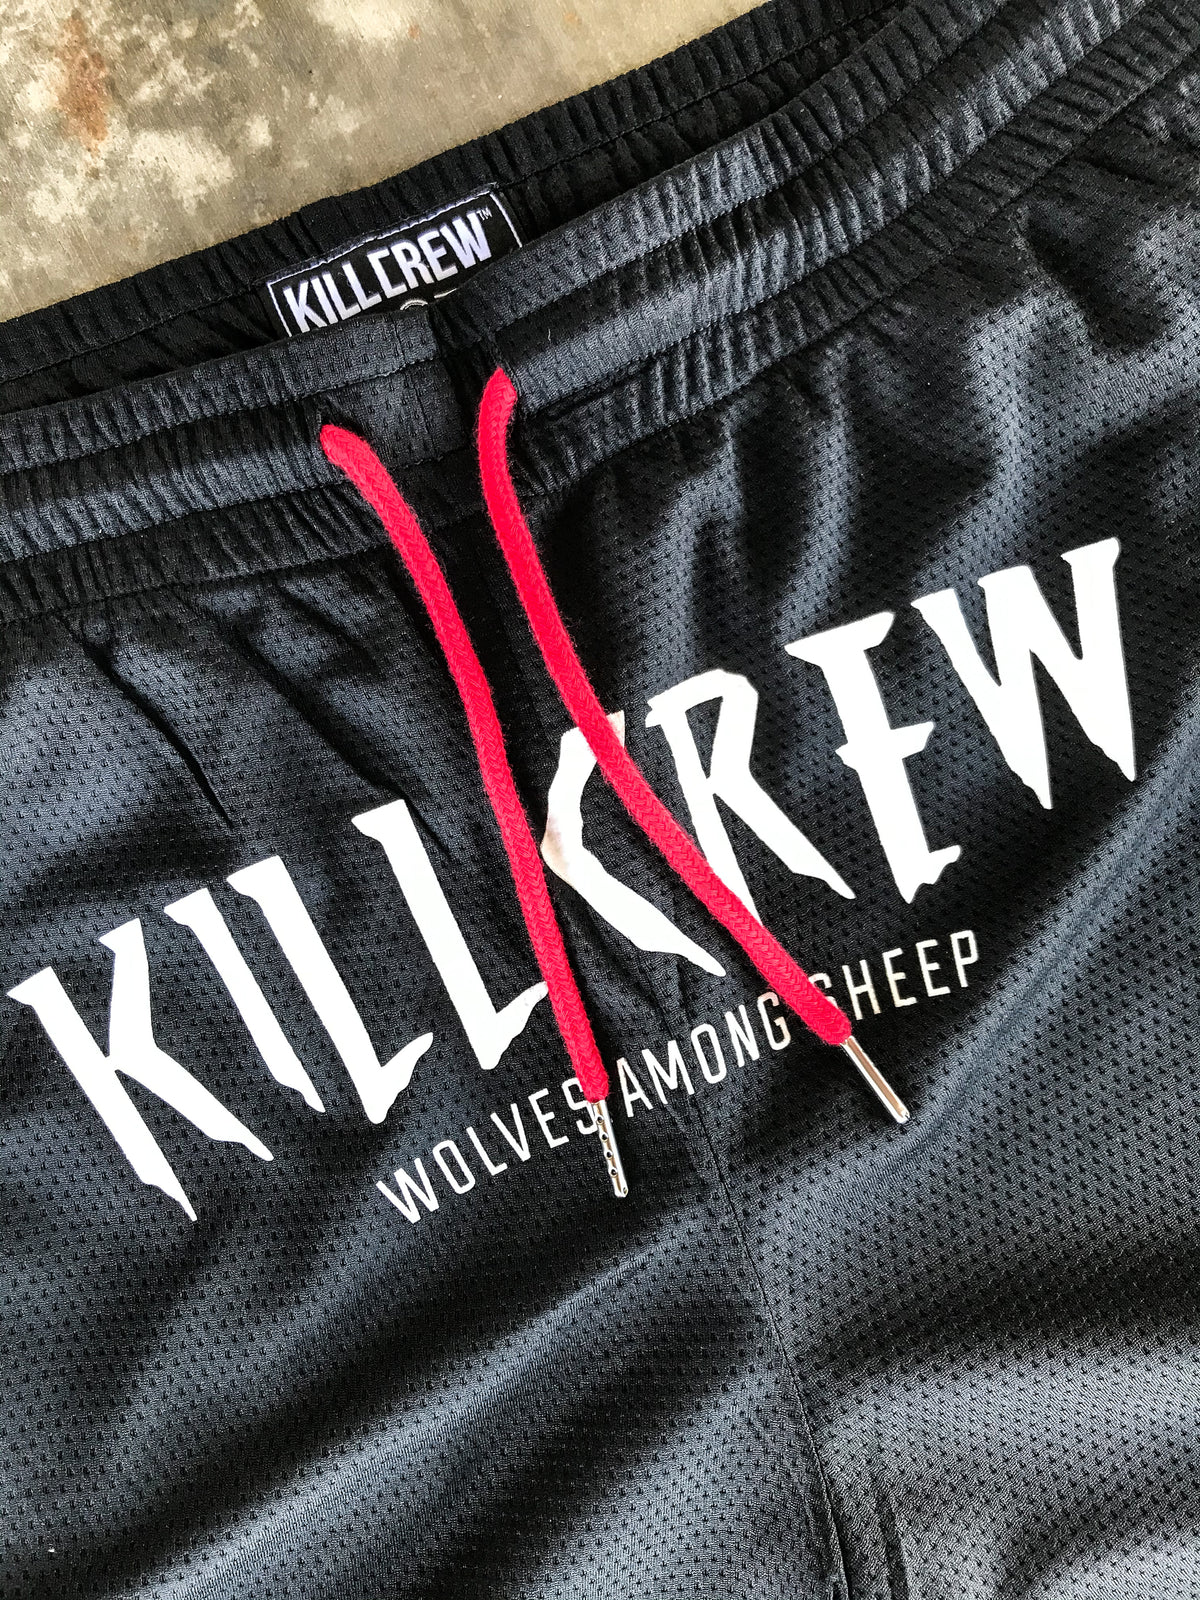 Killcrew Shorts Review